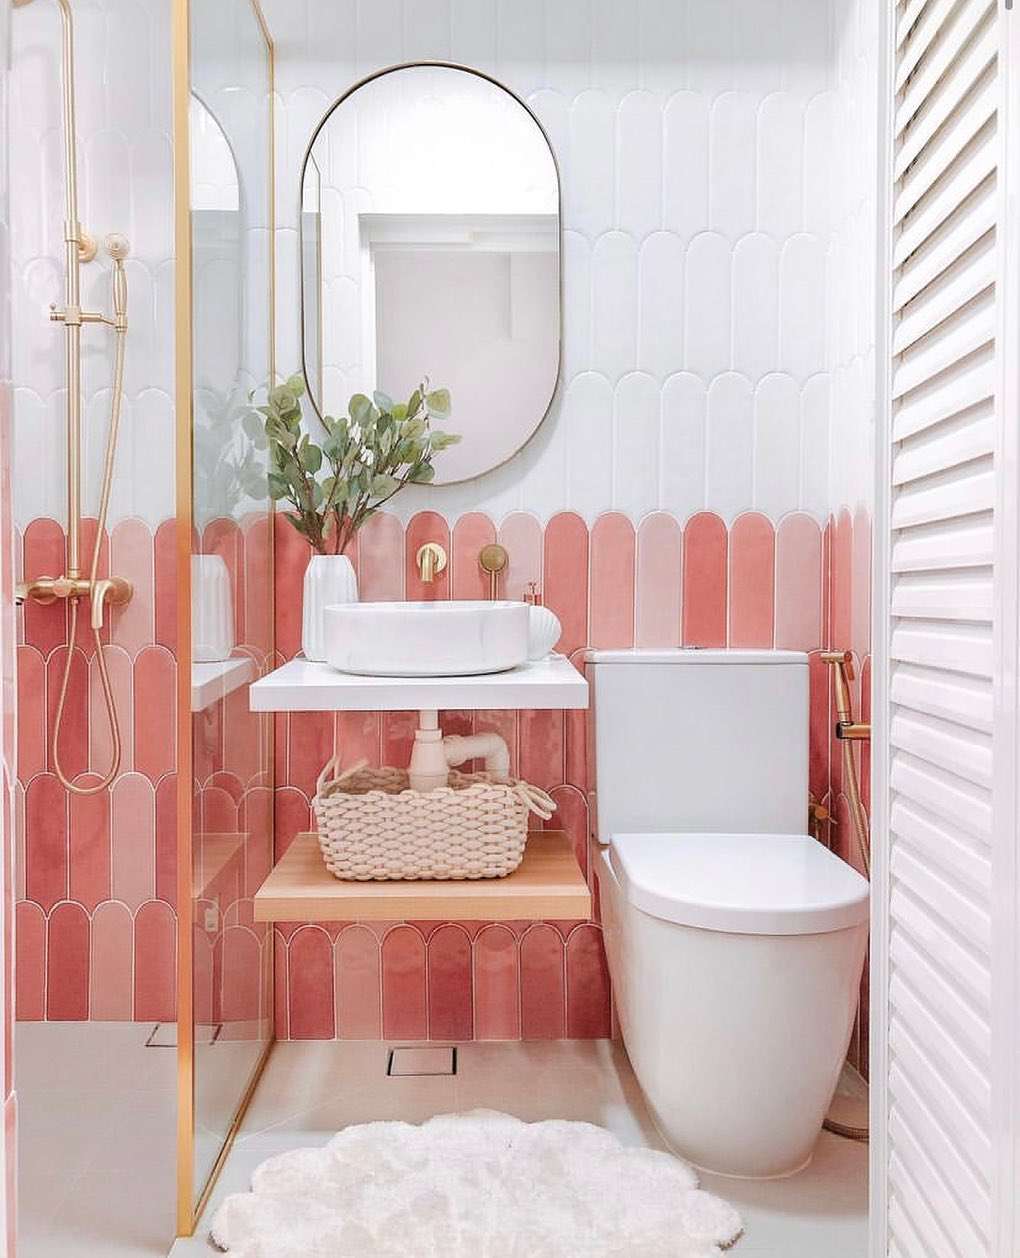 azulejos rosa no banheiro